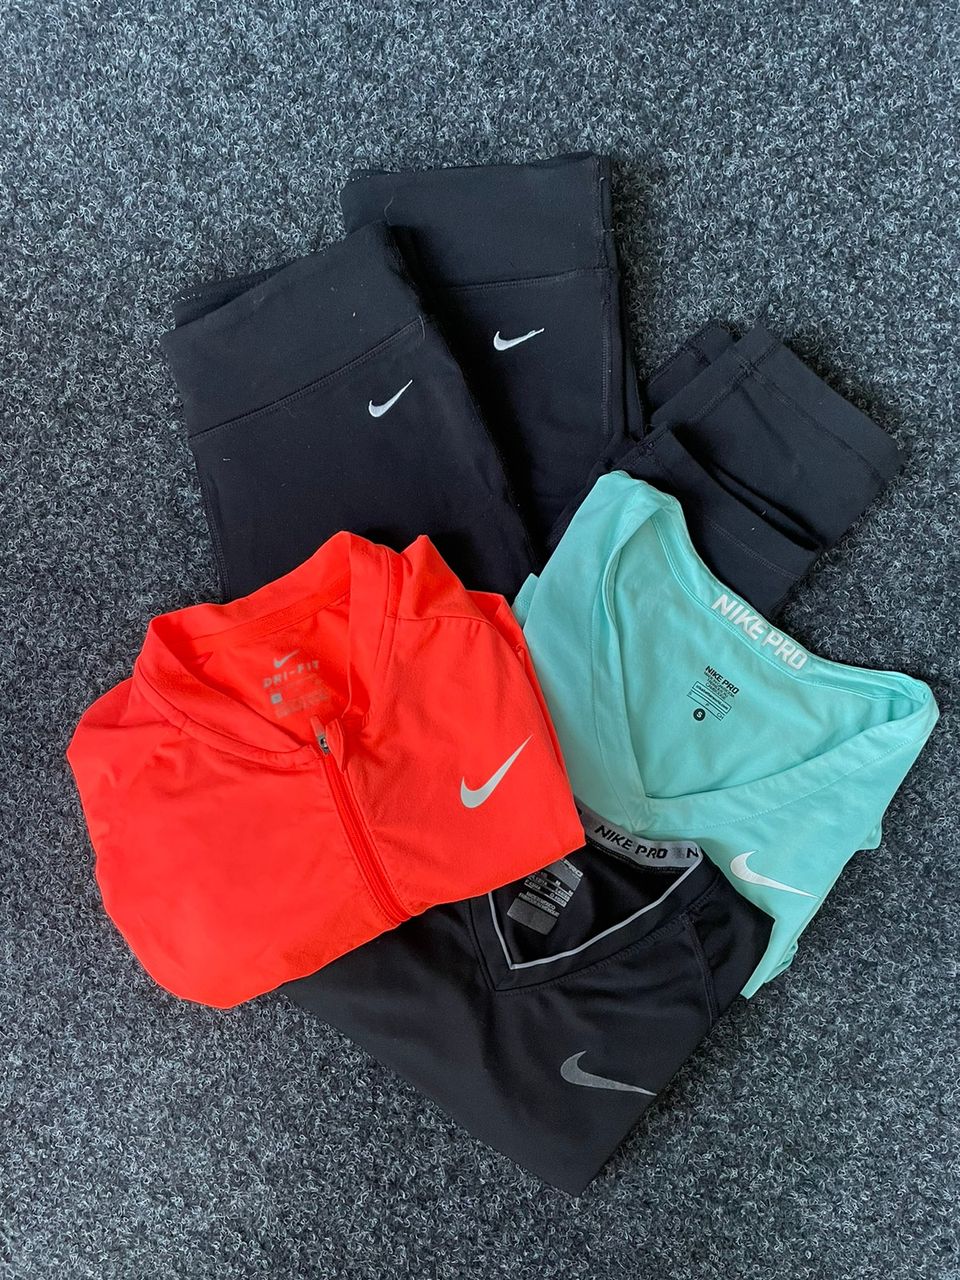 Nike treenivaate paketti